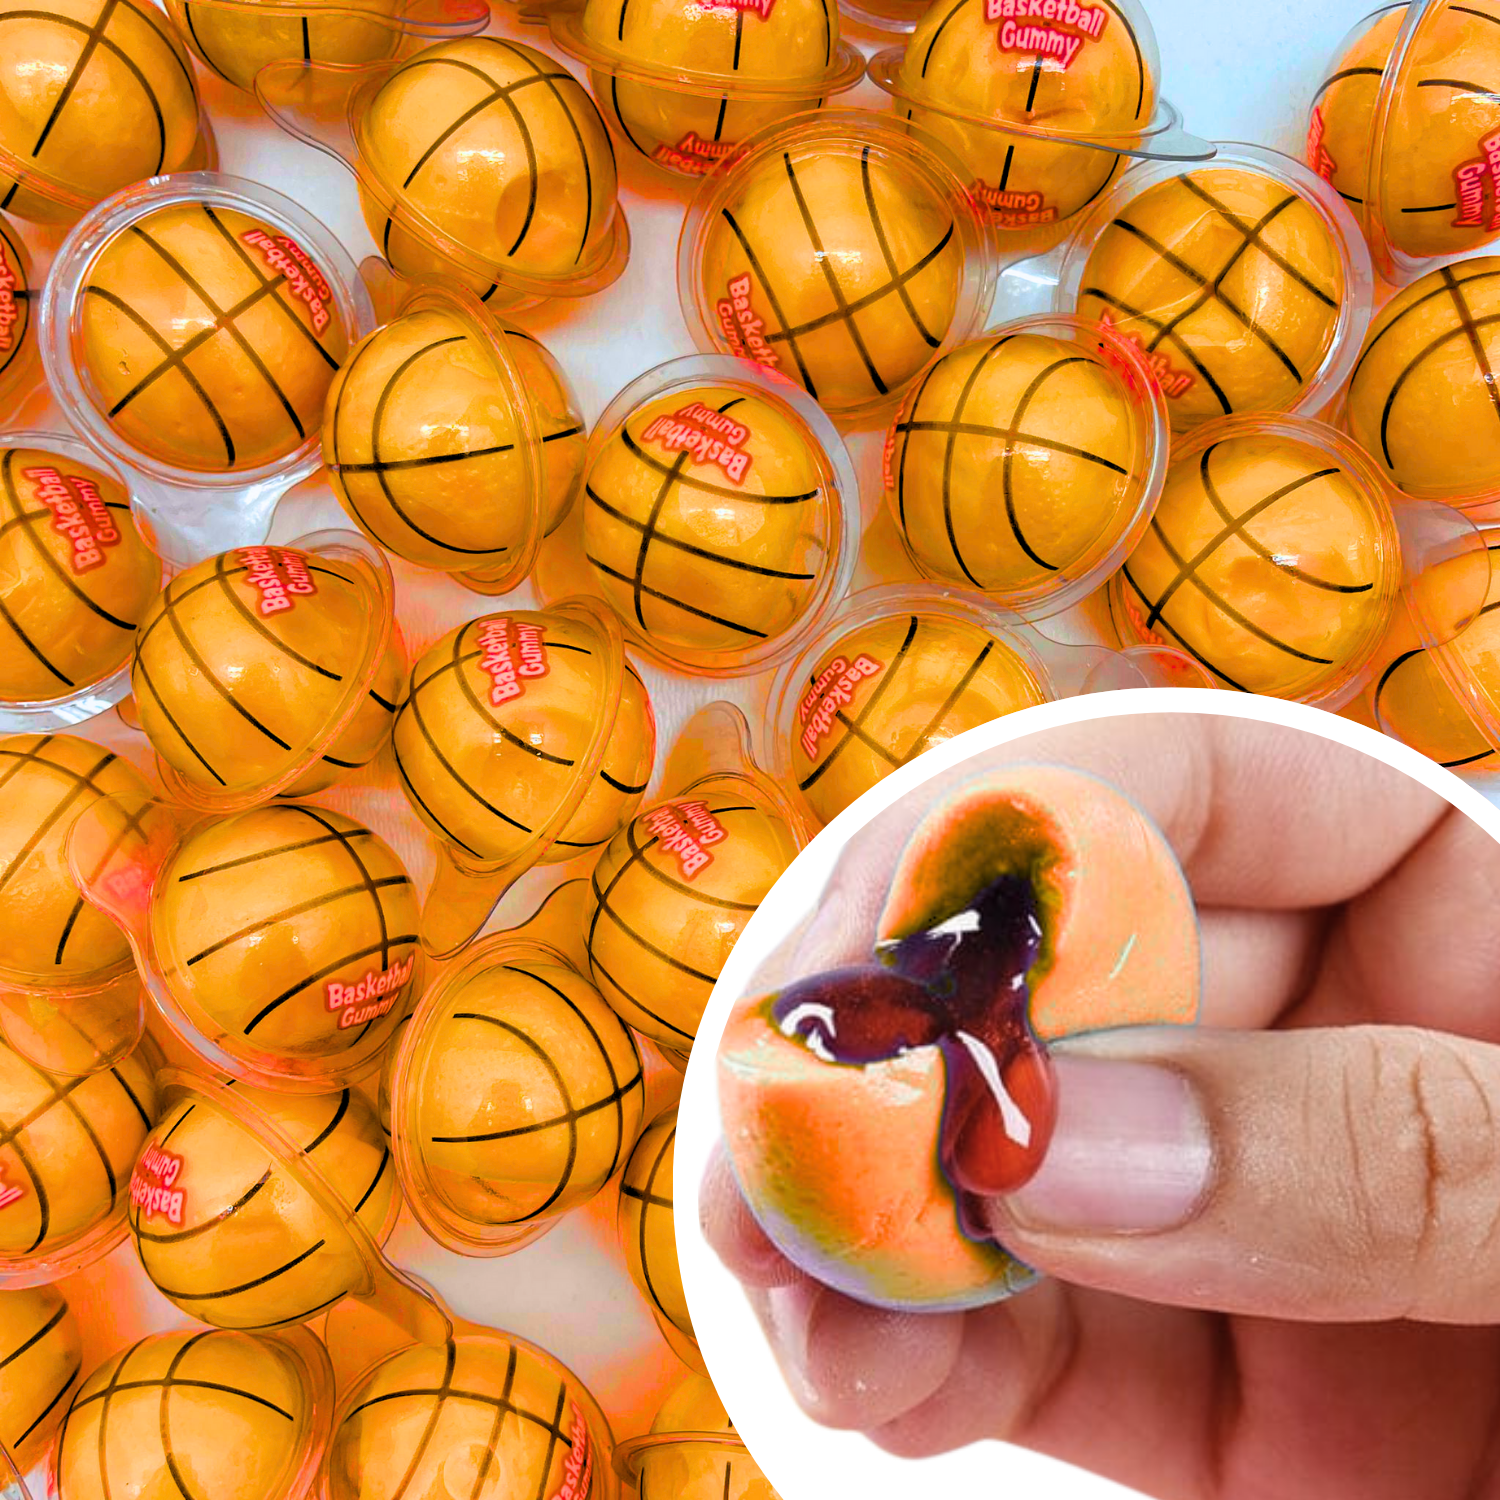 Basketball Gummy Jelly - 2.2 Pounds